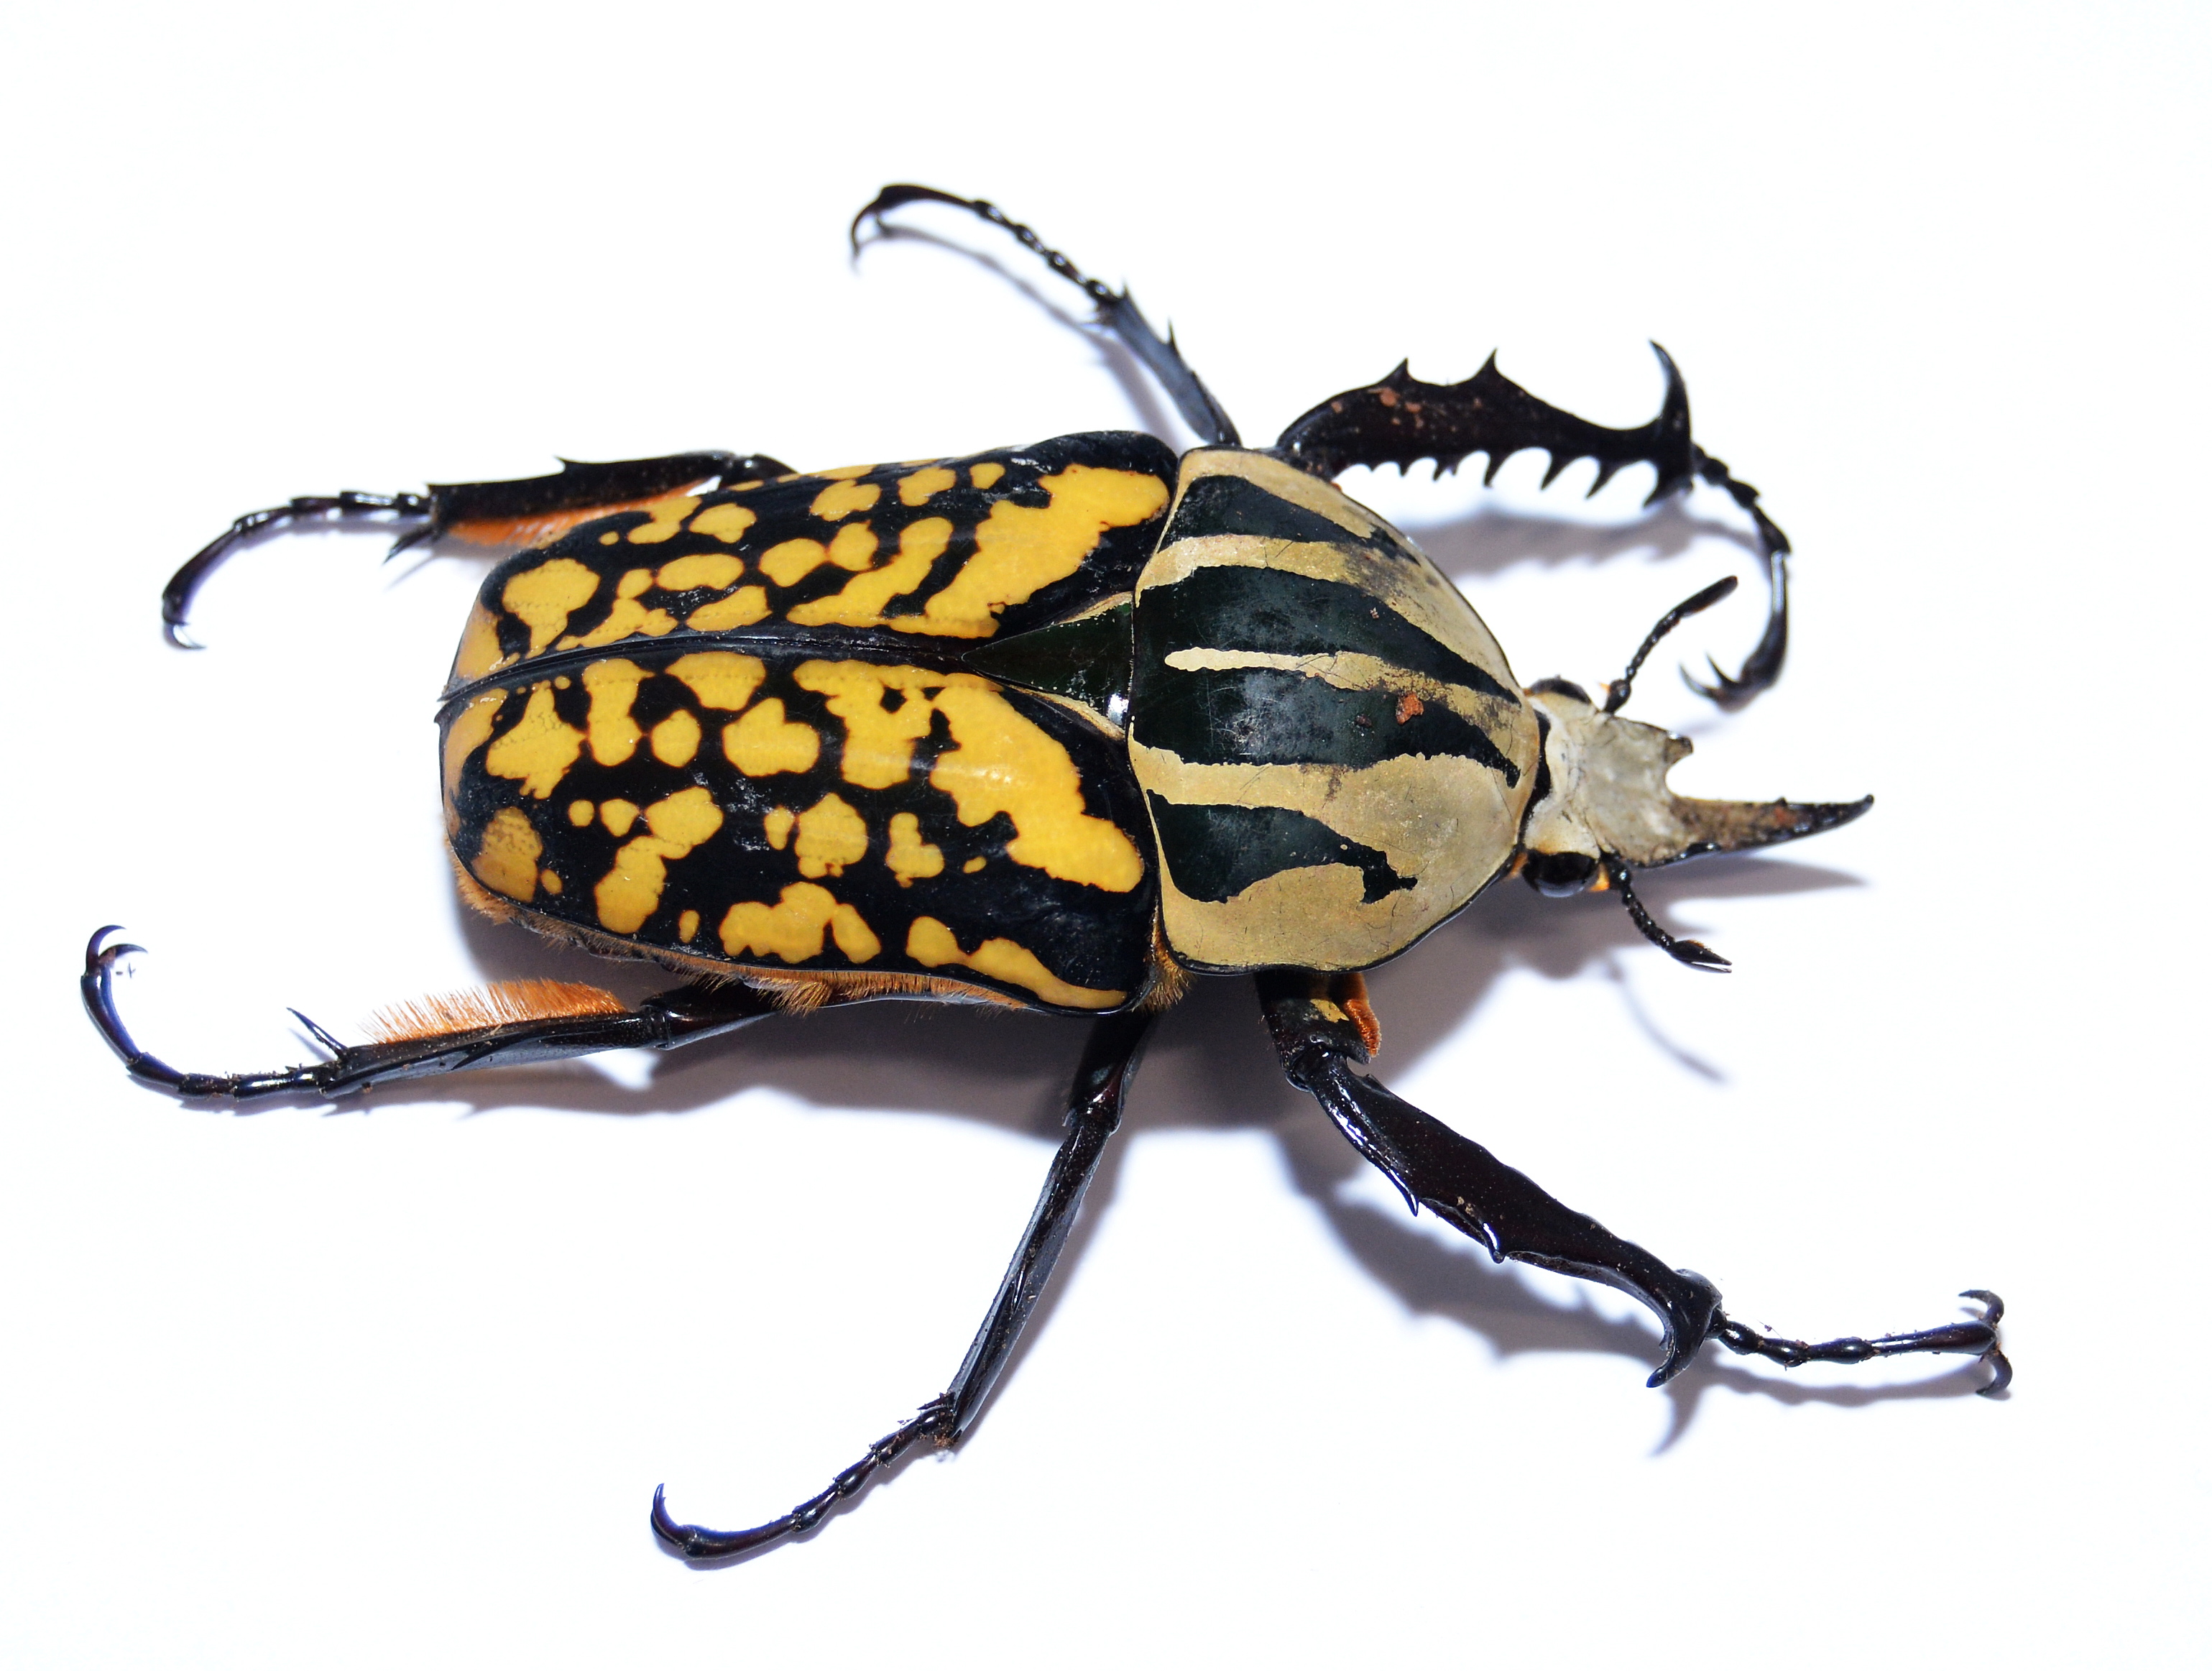 Nicht zum Kuscheln, aber zum Beobachten: Käfer können inetressante Haustiere sein. Ihre lateinischen Namen allerdings klingen kompliziert. Dieser Käfer nennt sich „Mecynorrhina oberthueri kirchneri forma decorata".